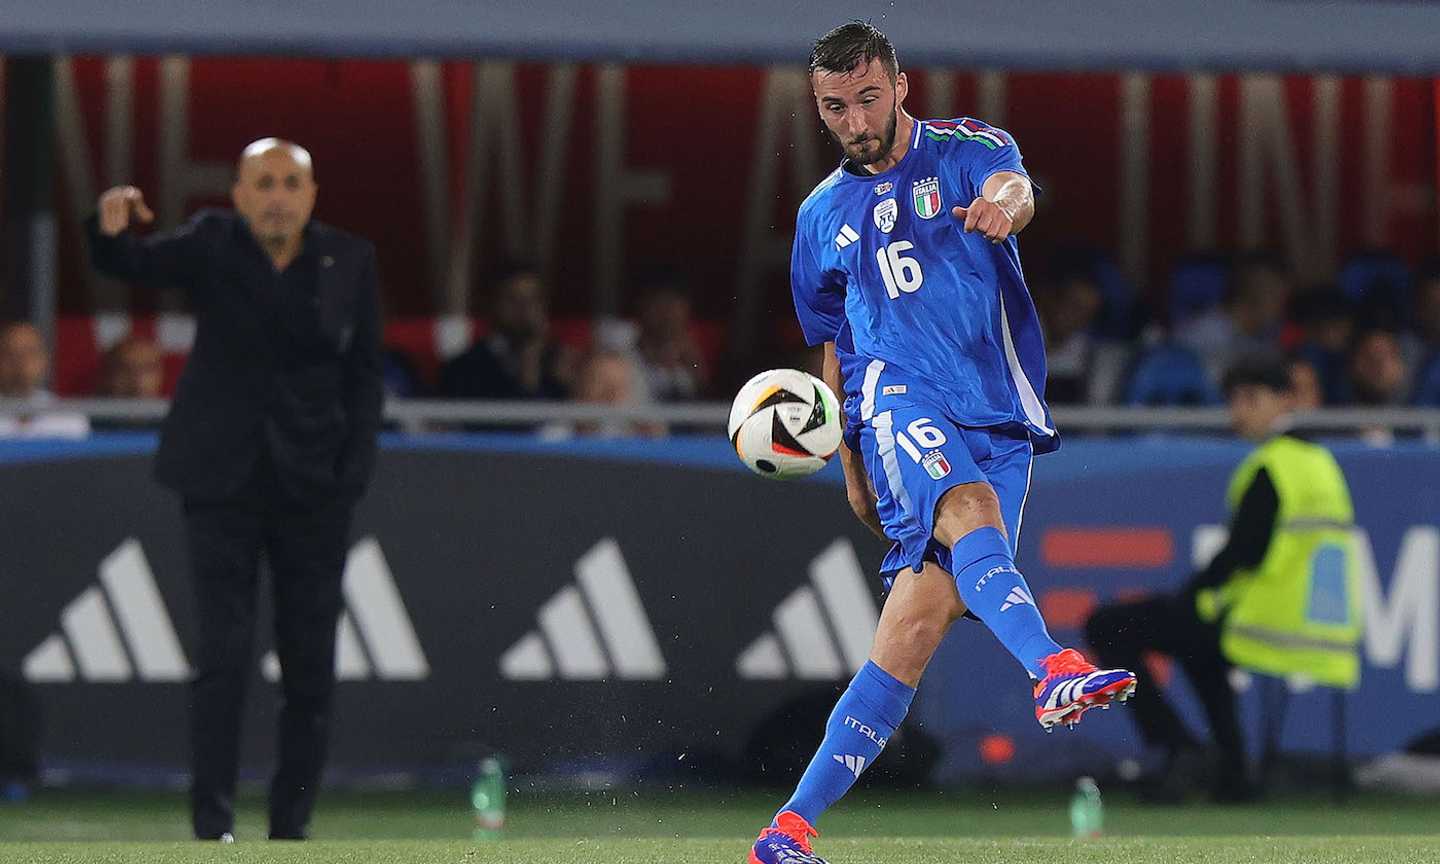 Svizzera-Italia 2-0, Cristante: "A casa meritatamente, ci ha messo sotto"